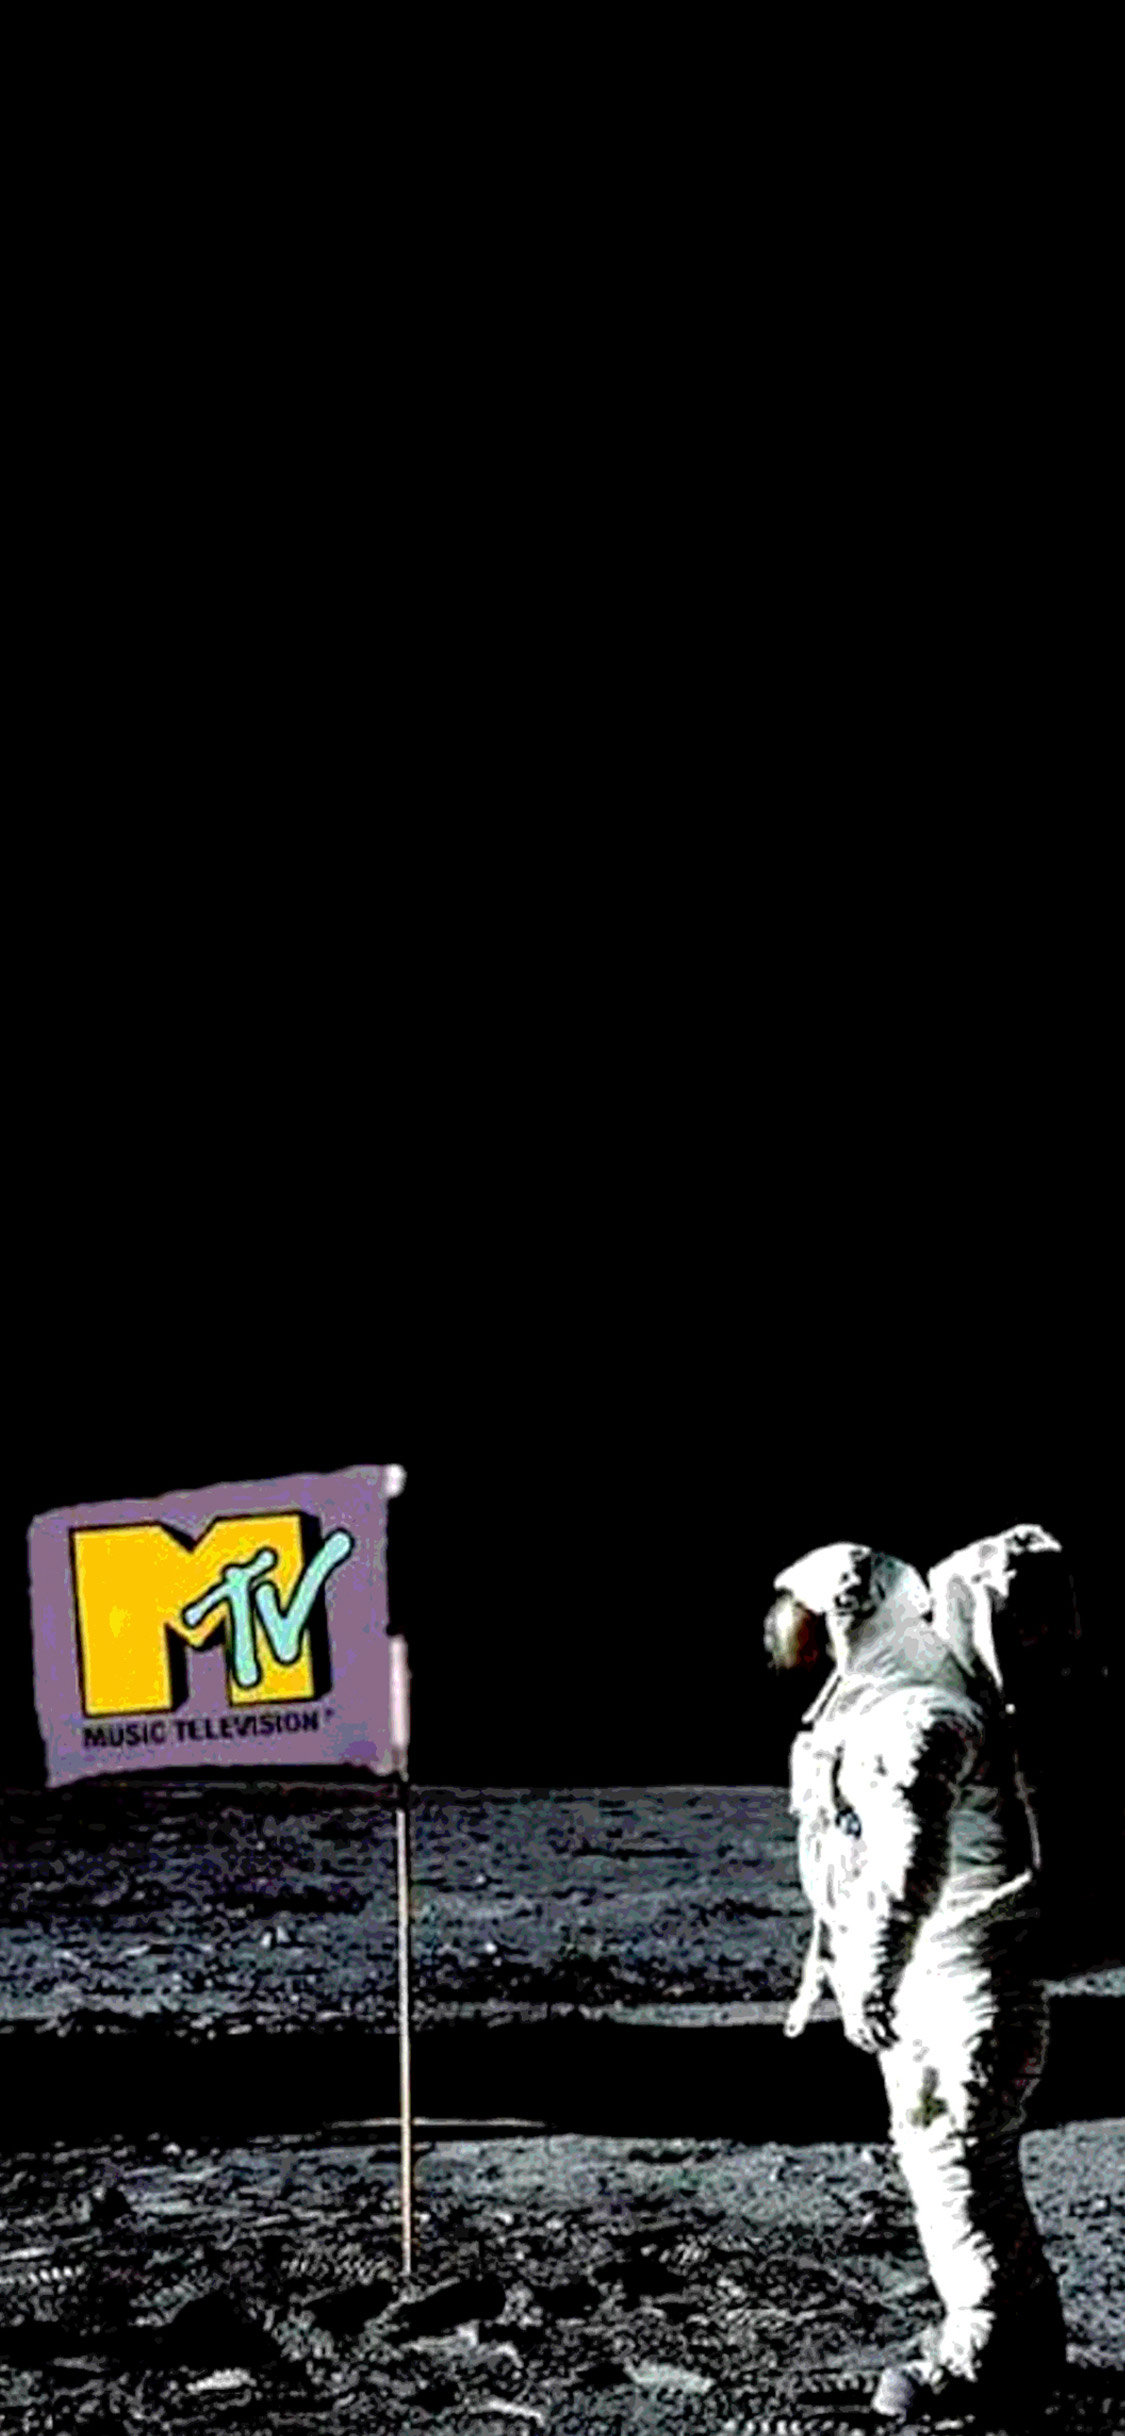 phone wallpaper displaying MTV promo // moonman